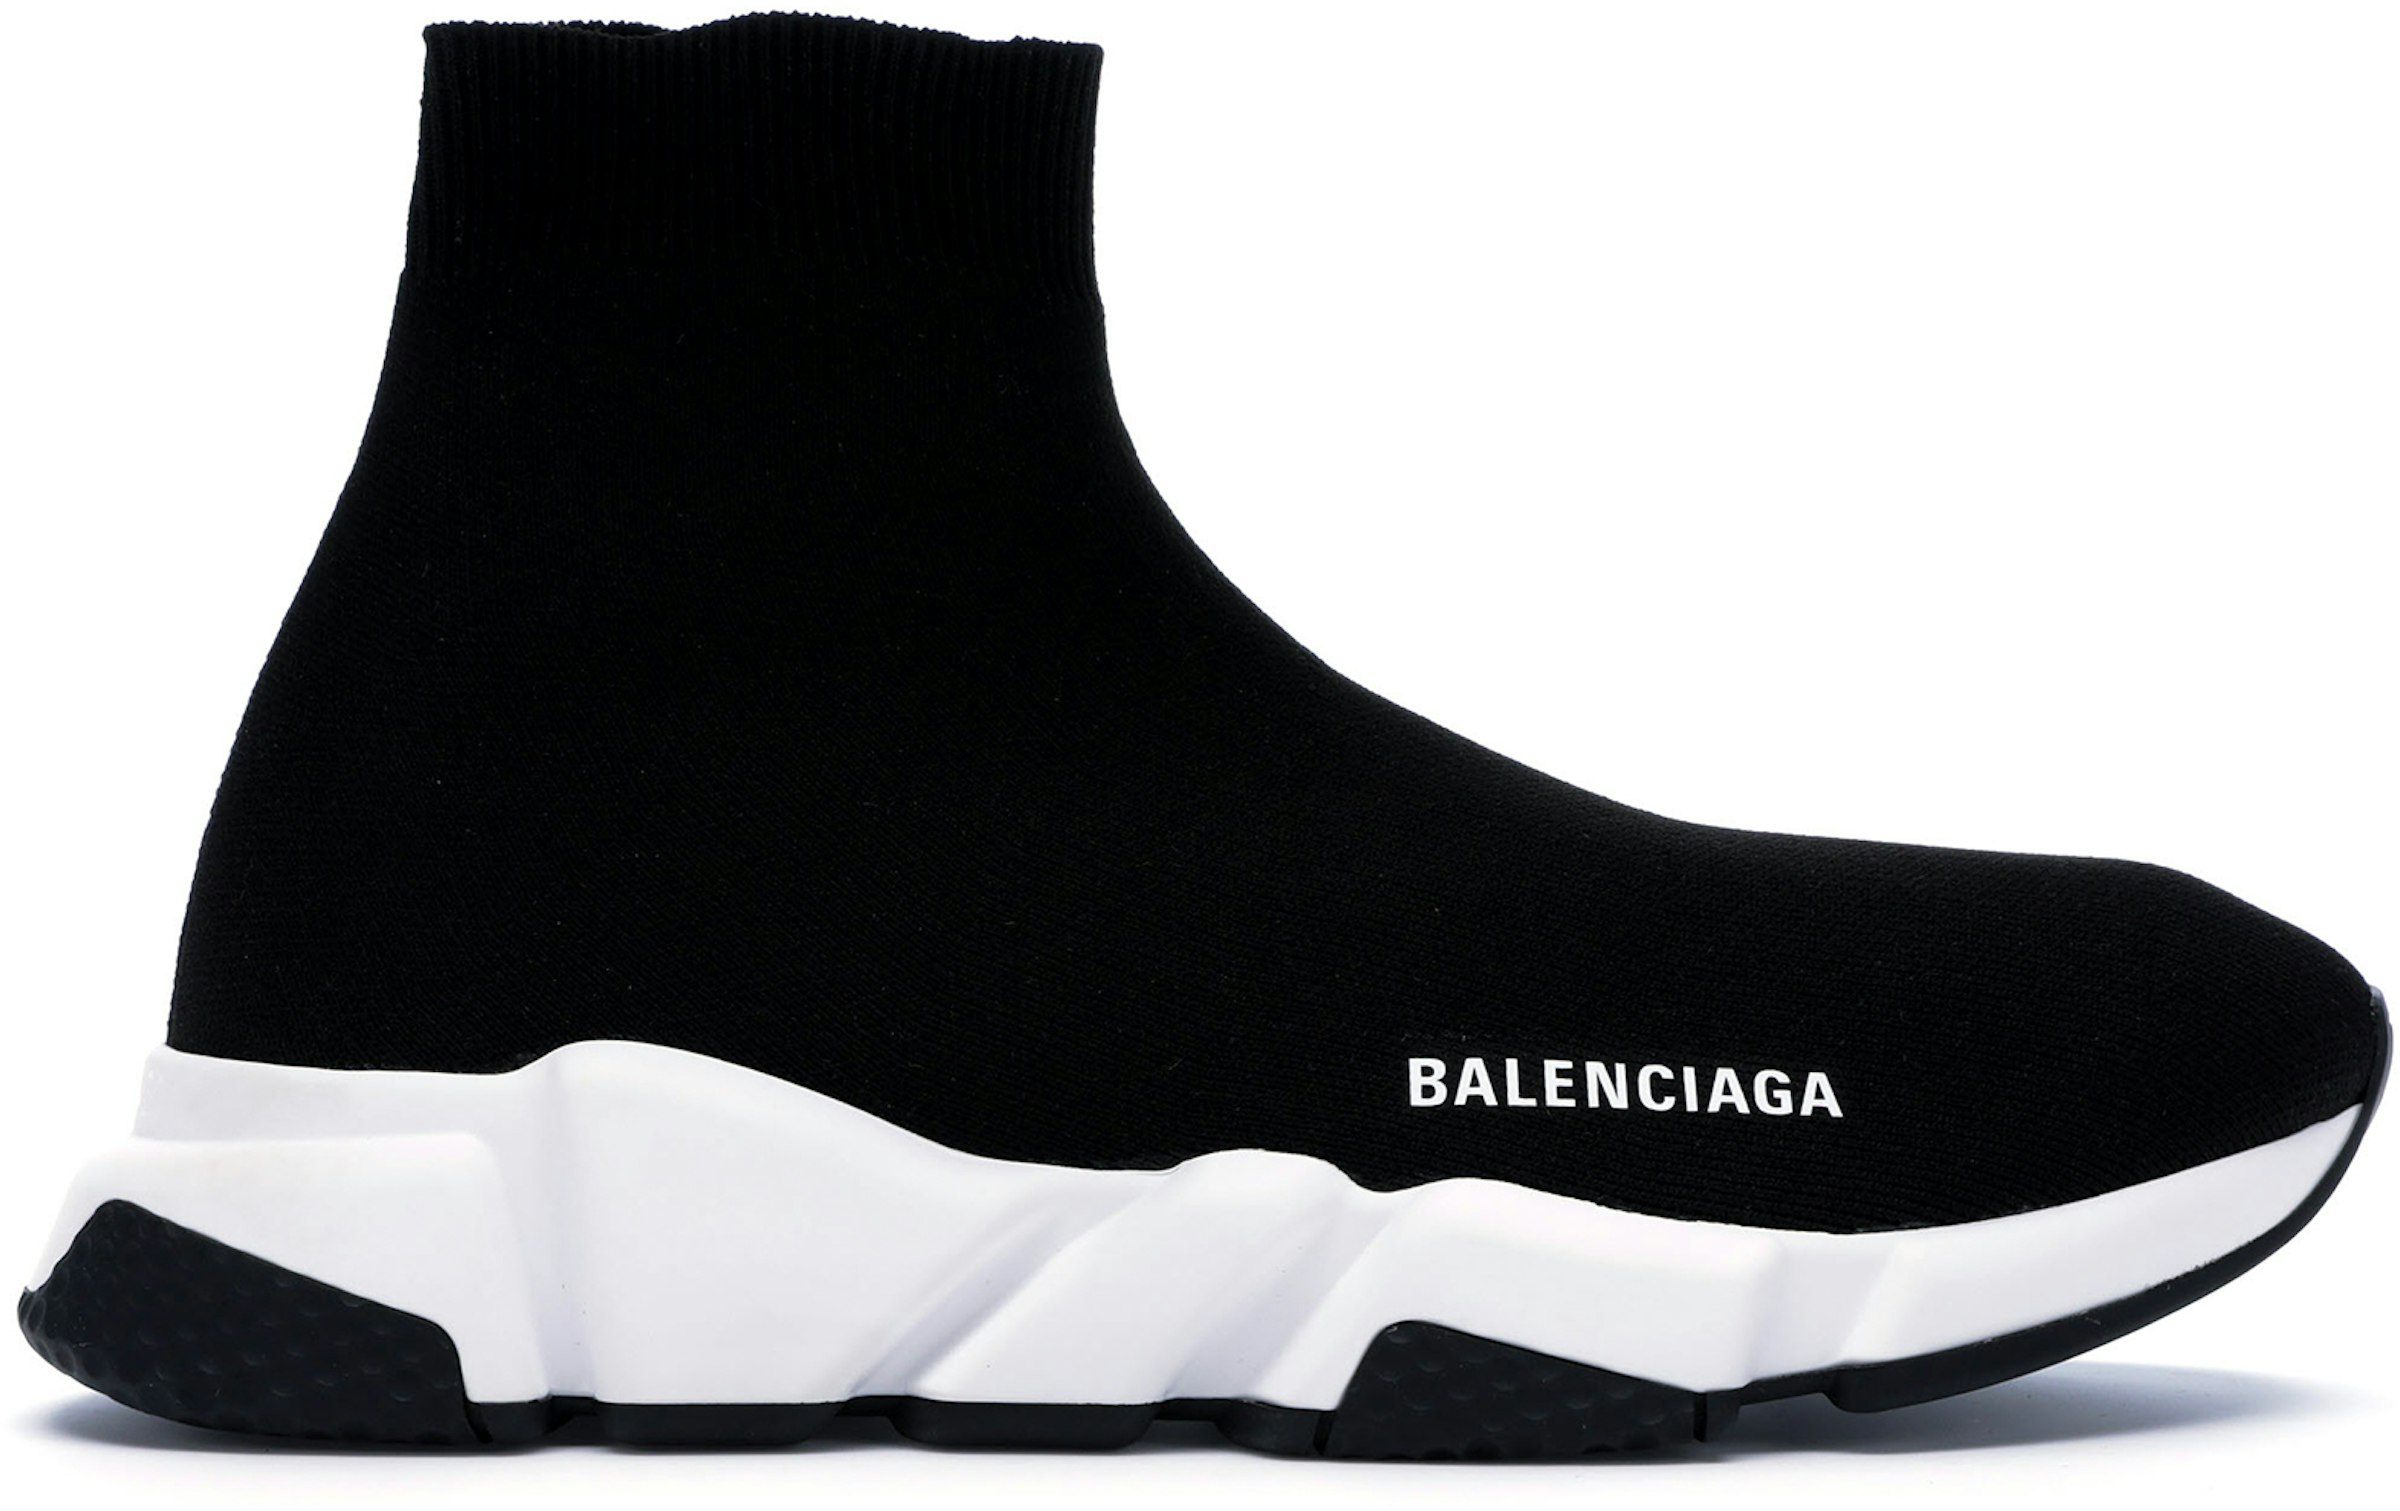 Balenciaga Speed Trainer Black (2018) 530349 W05G9 1000/530349 W05G0 1000 - US